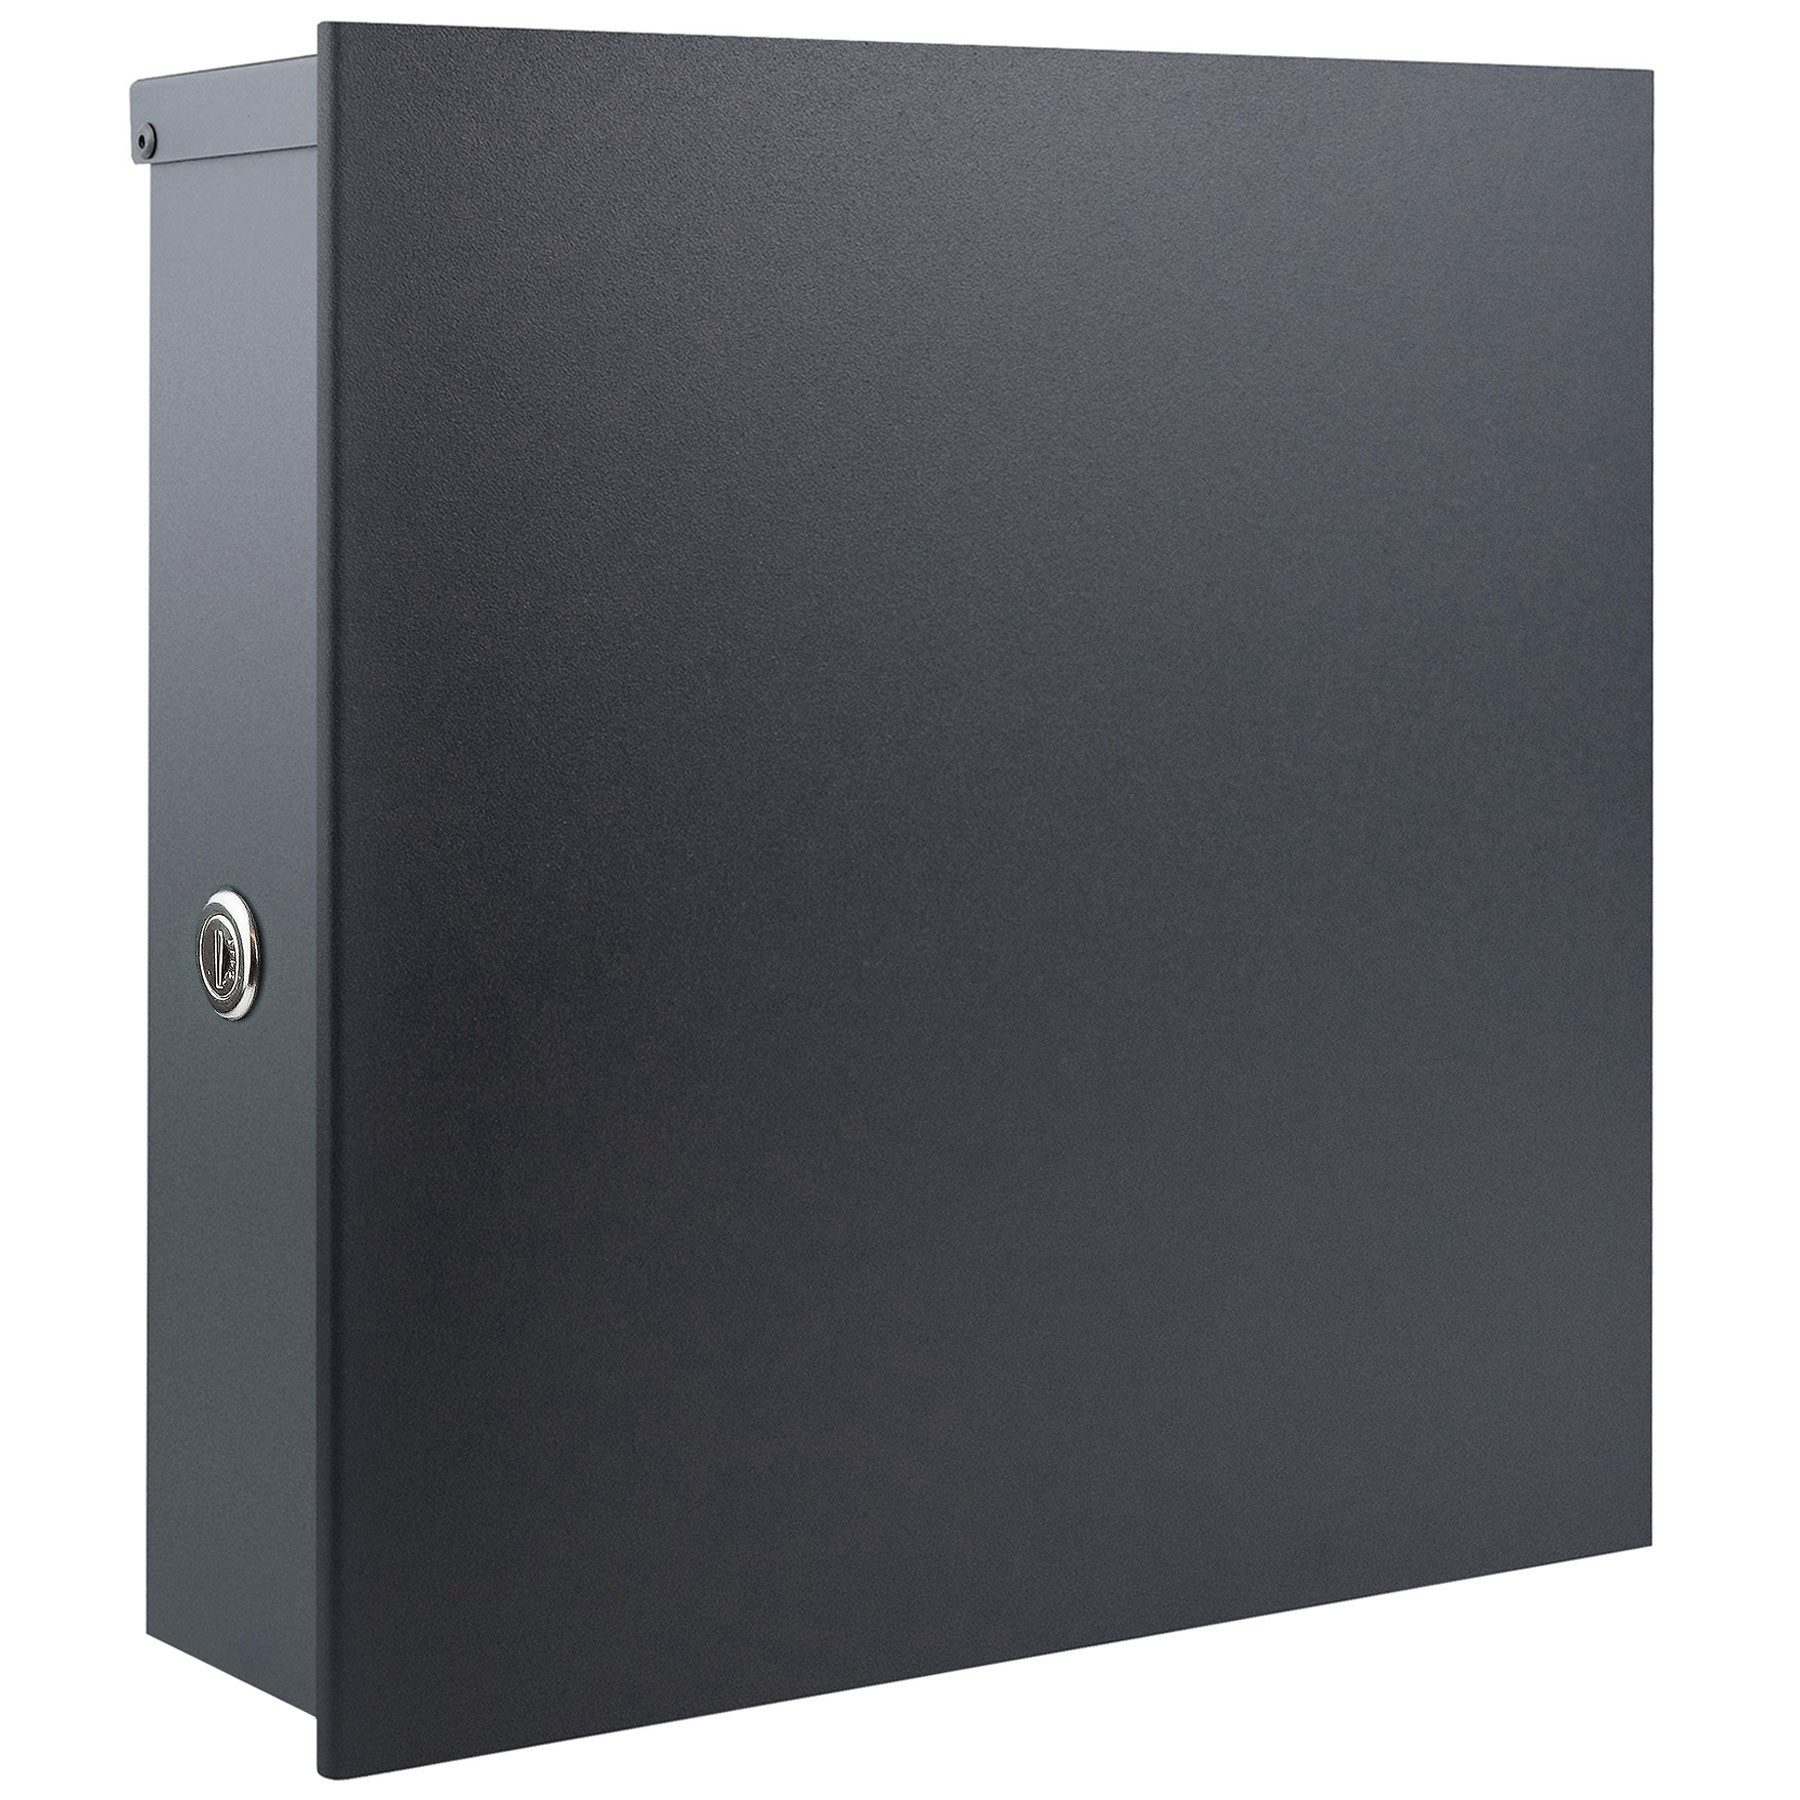 MOCAVI Briefkasten Premium-Box 670R anthrazit (RAL 7016) elegant, hochwertig